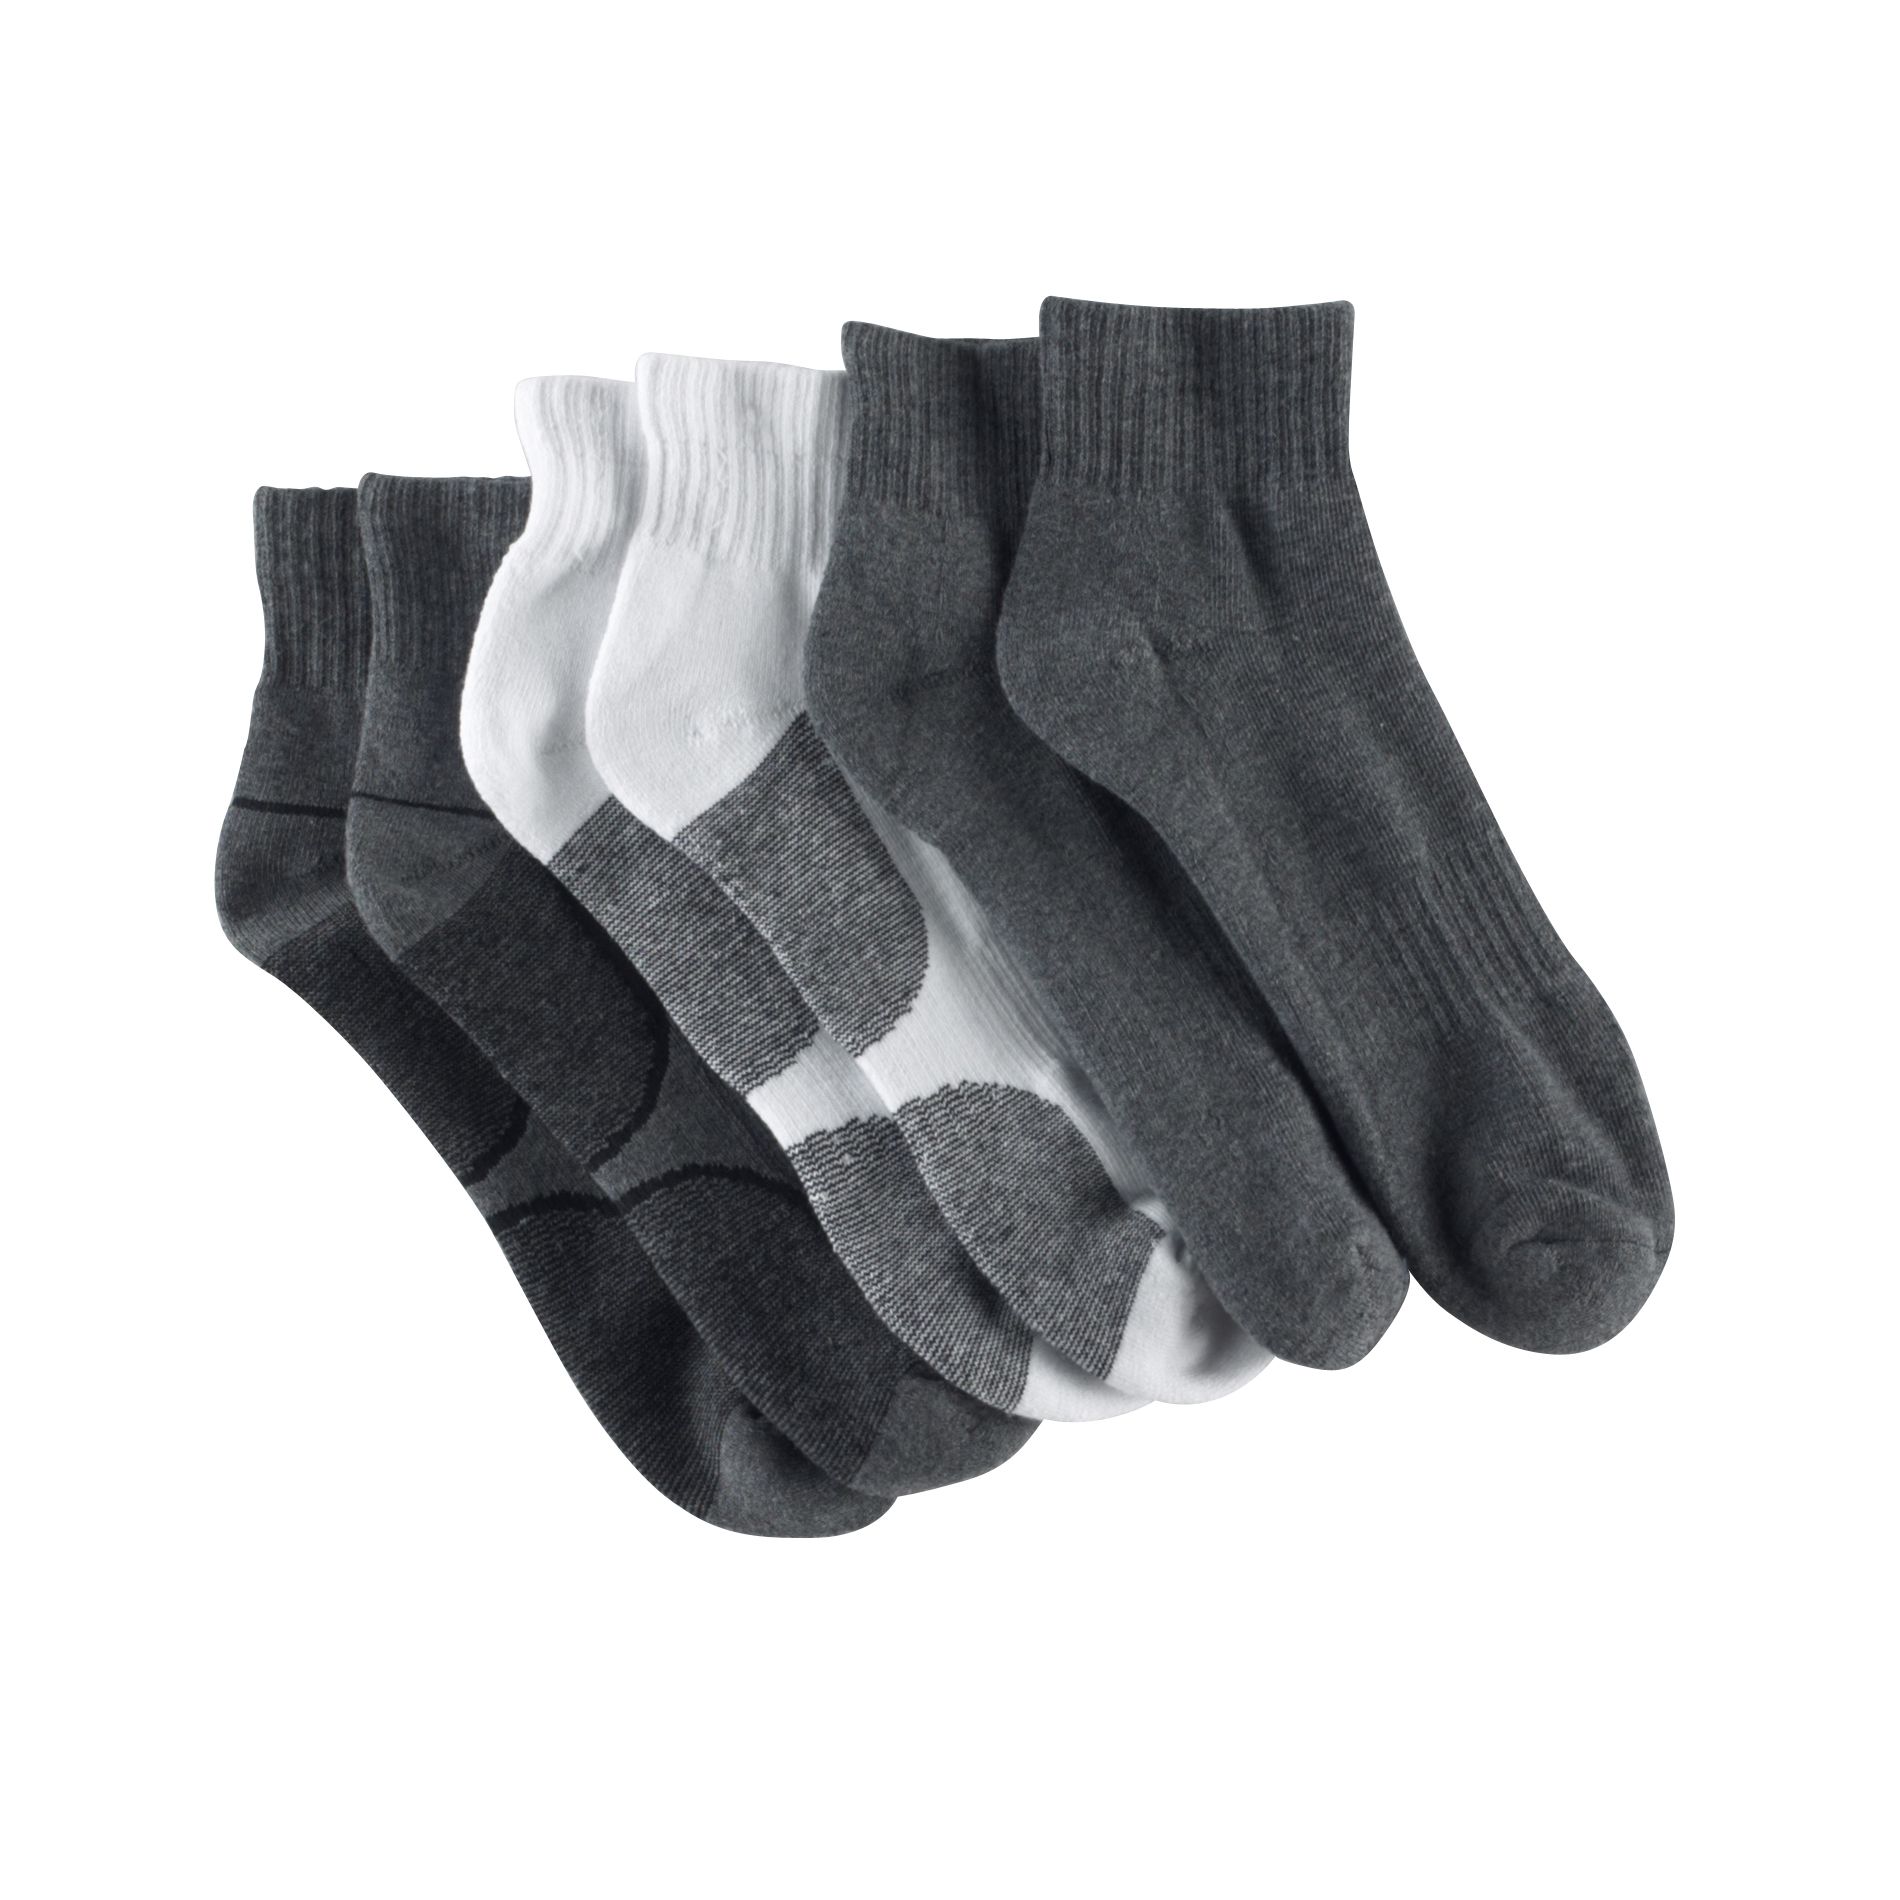 Athletech Men's 3-Pack Sports Quarter Socks